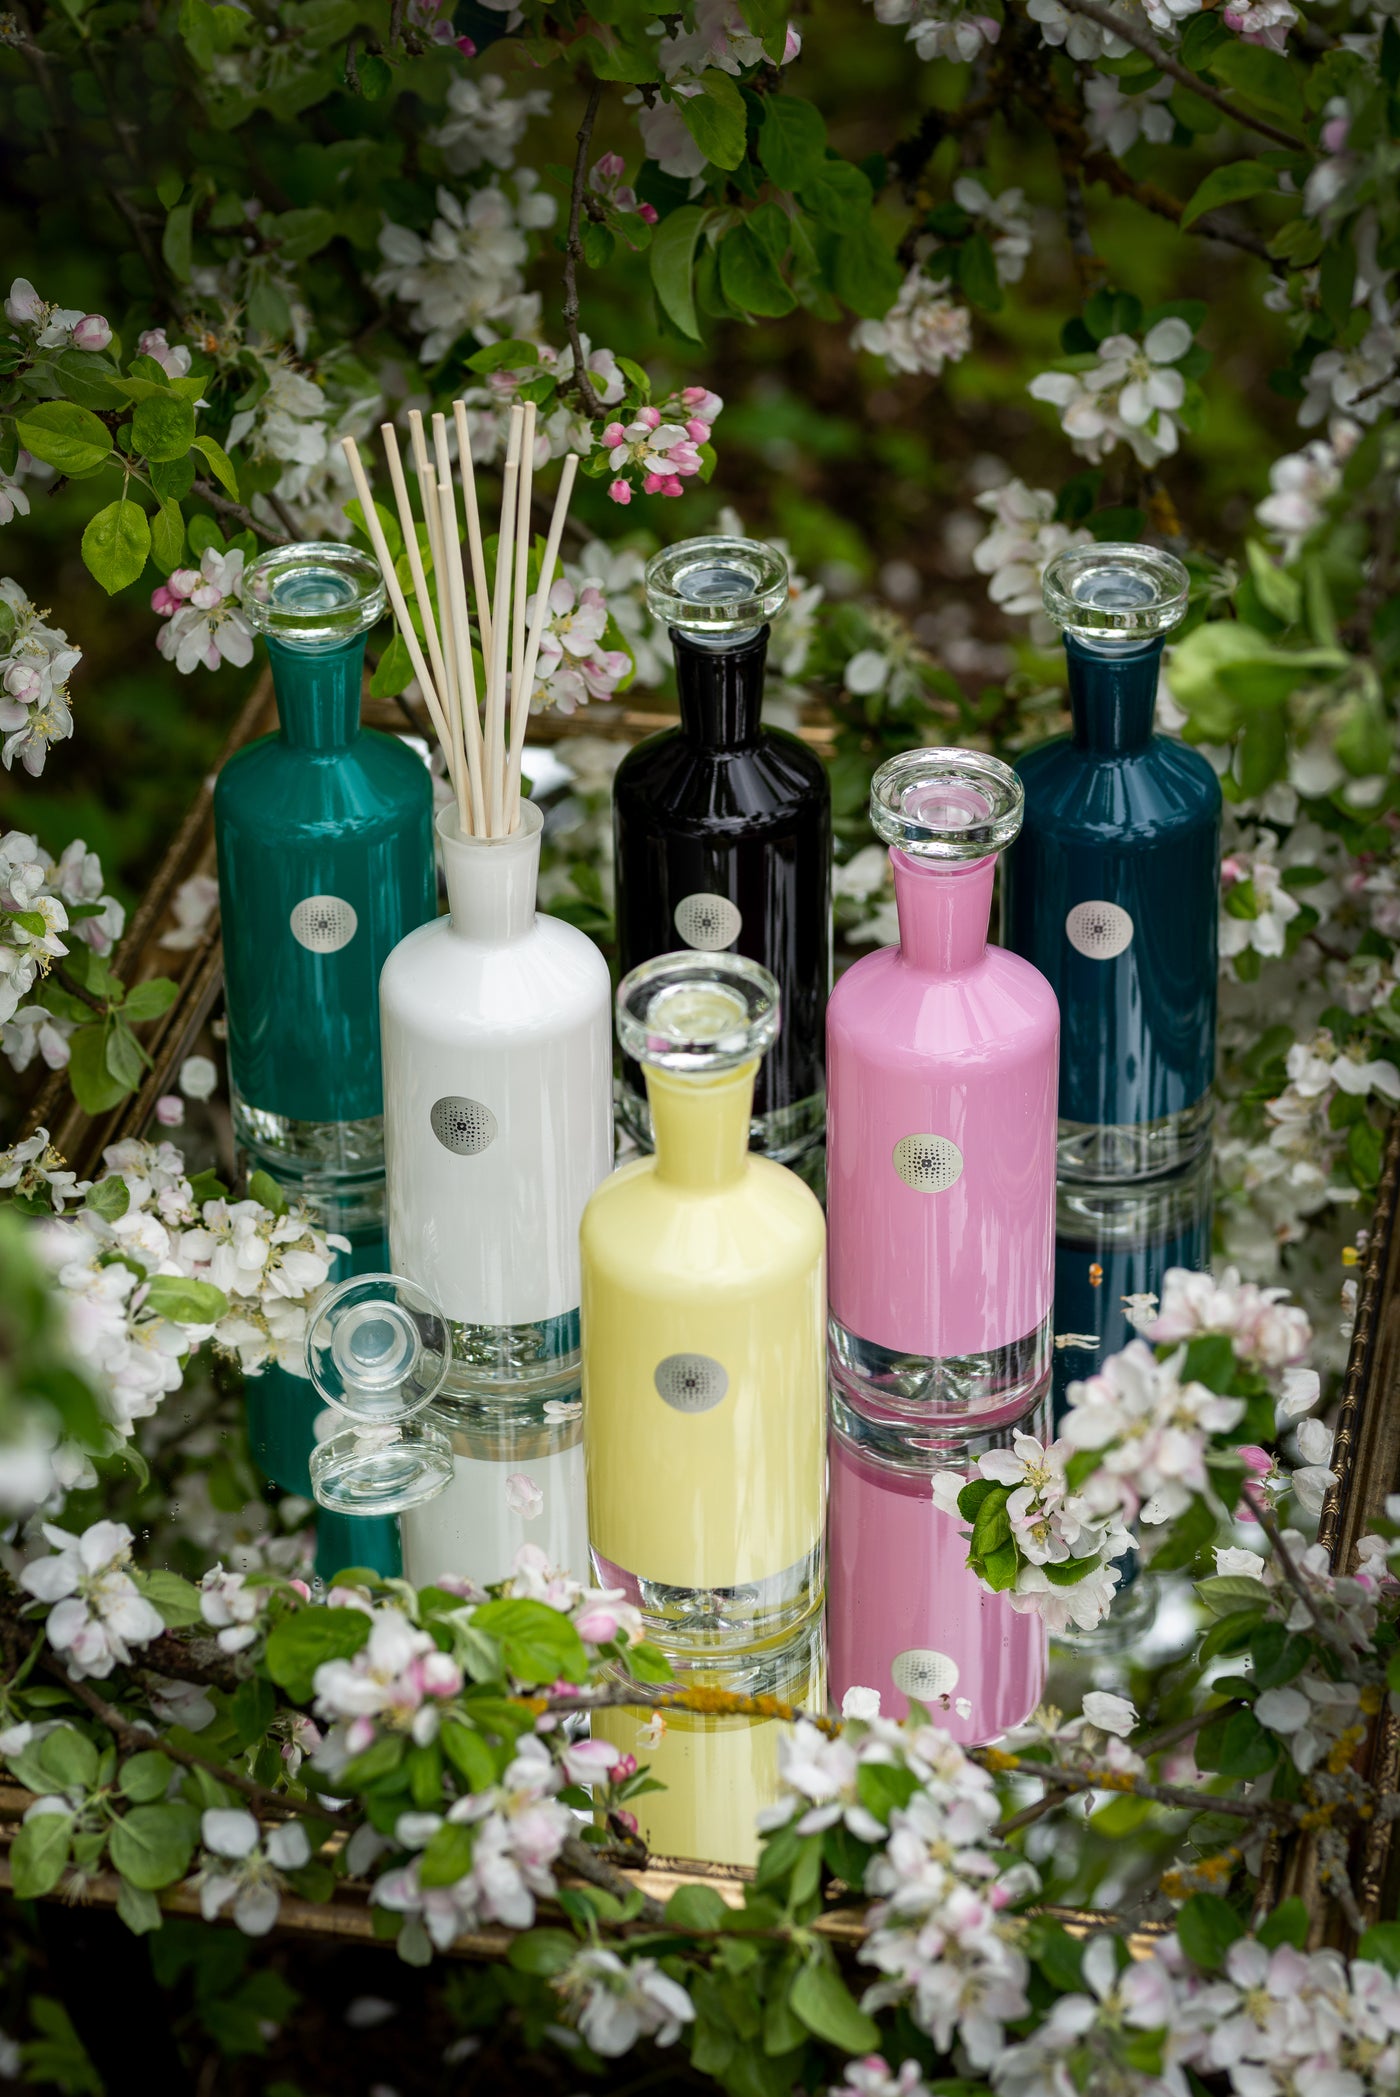 VIN & BOIS "Adore" Magnum home fragrance